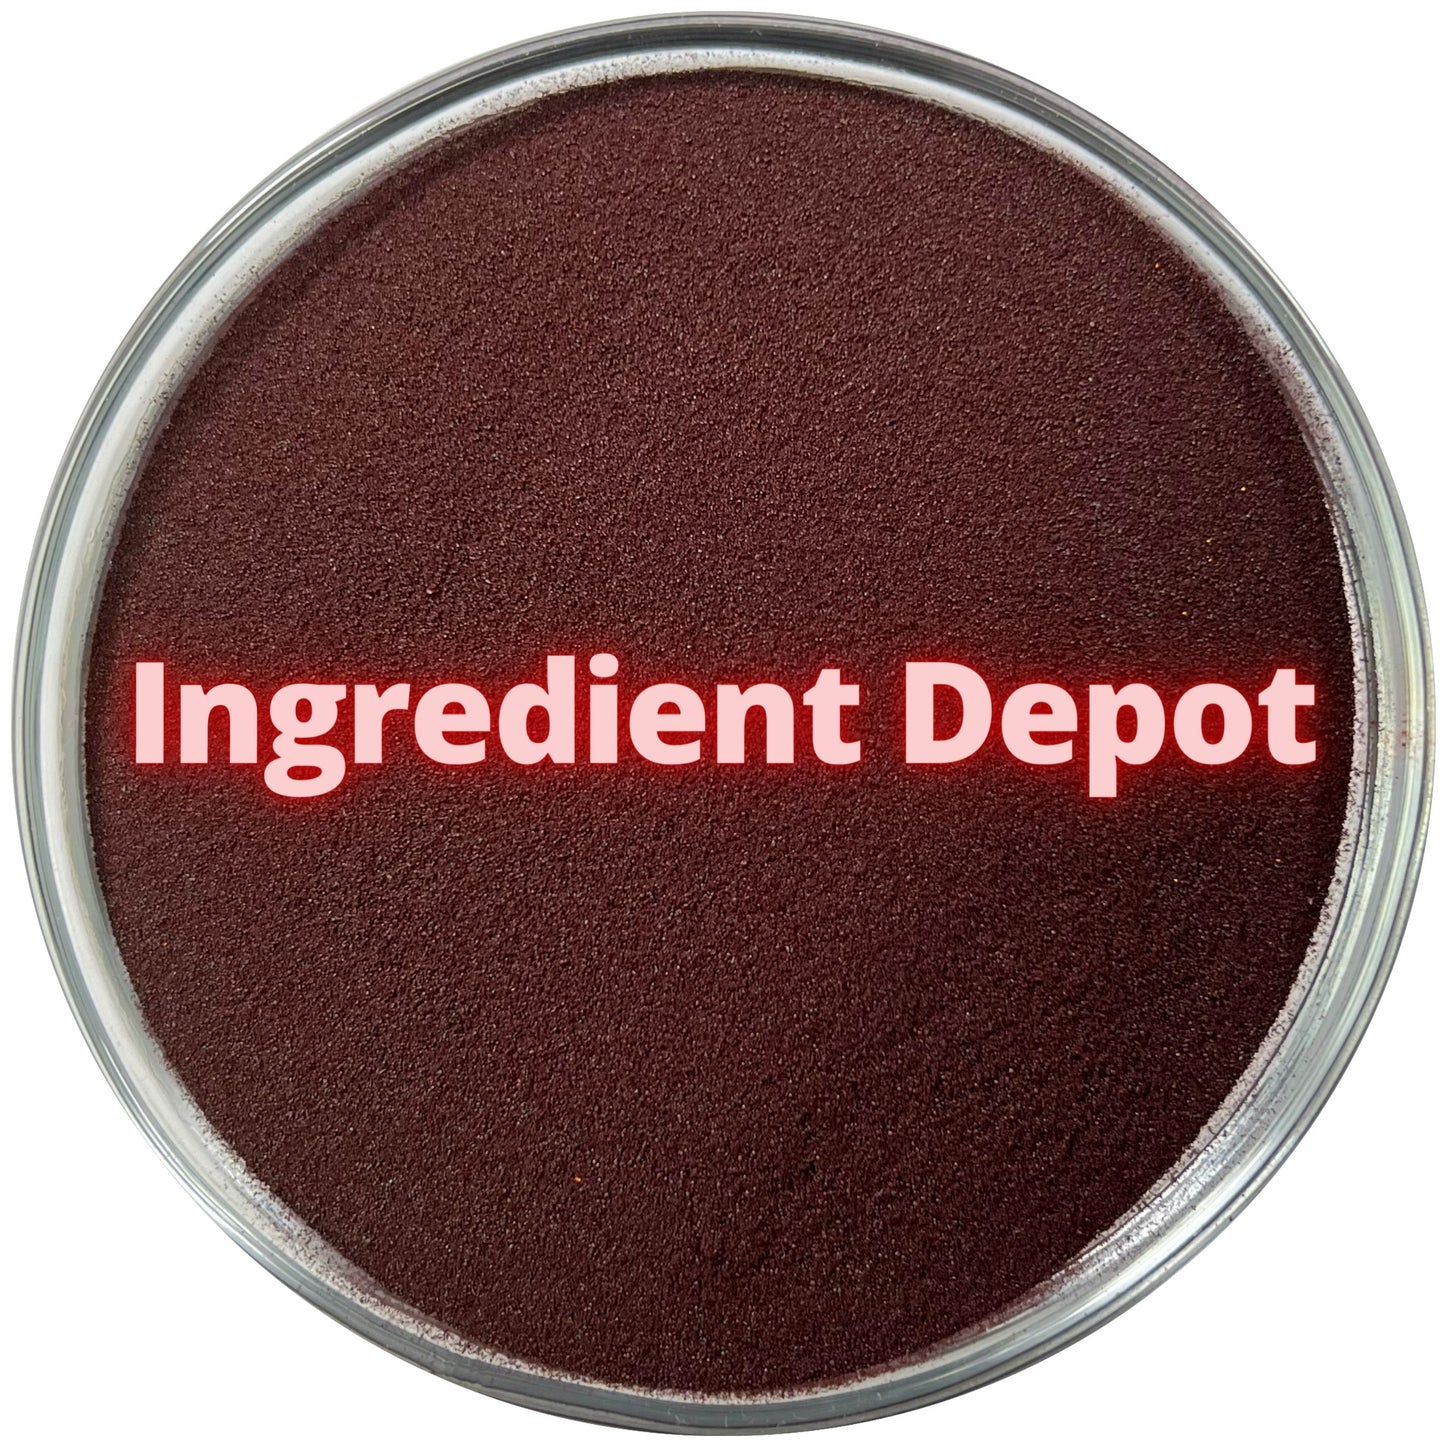 Red No. 40 FD&C Dye (Allura Red) 1 lb (454g) - IngredientDepot.com